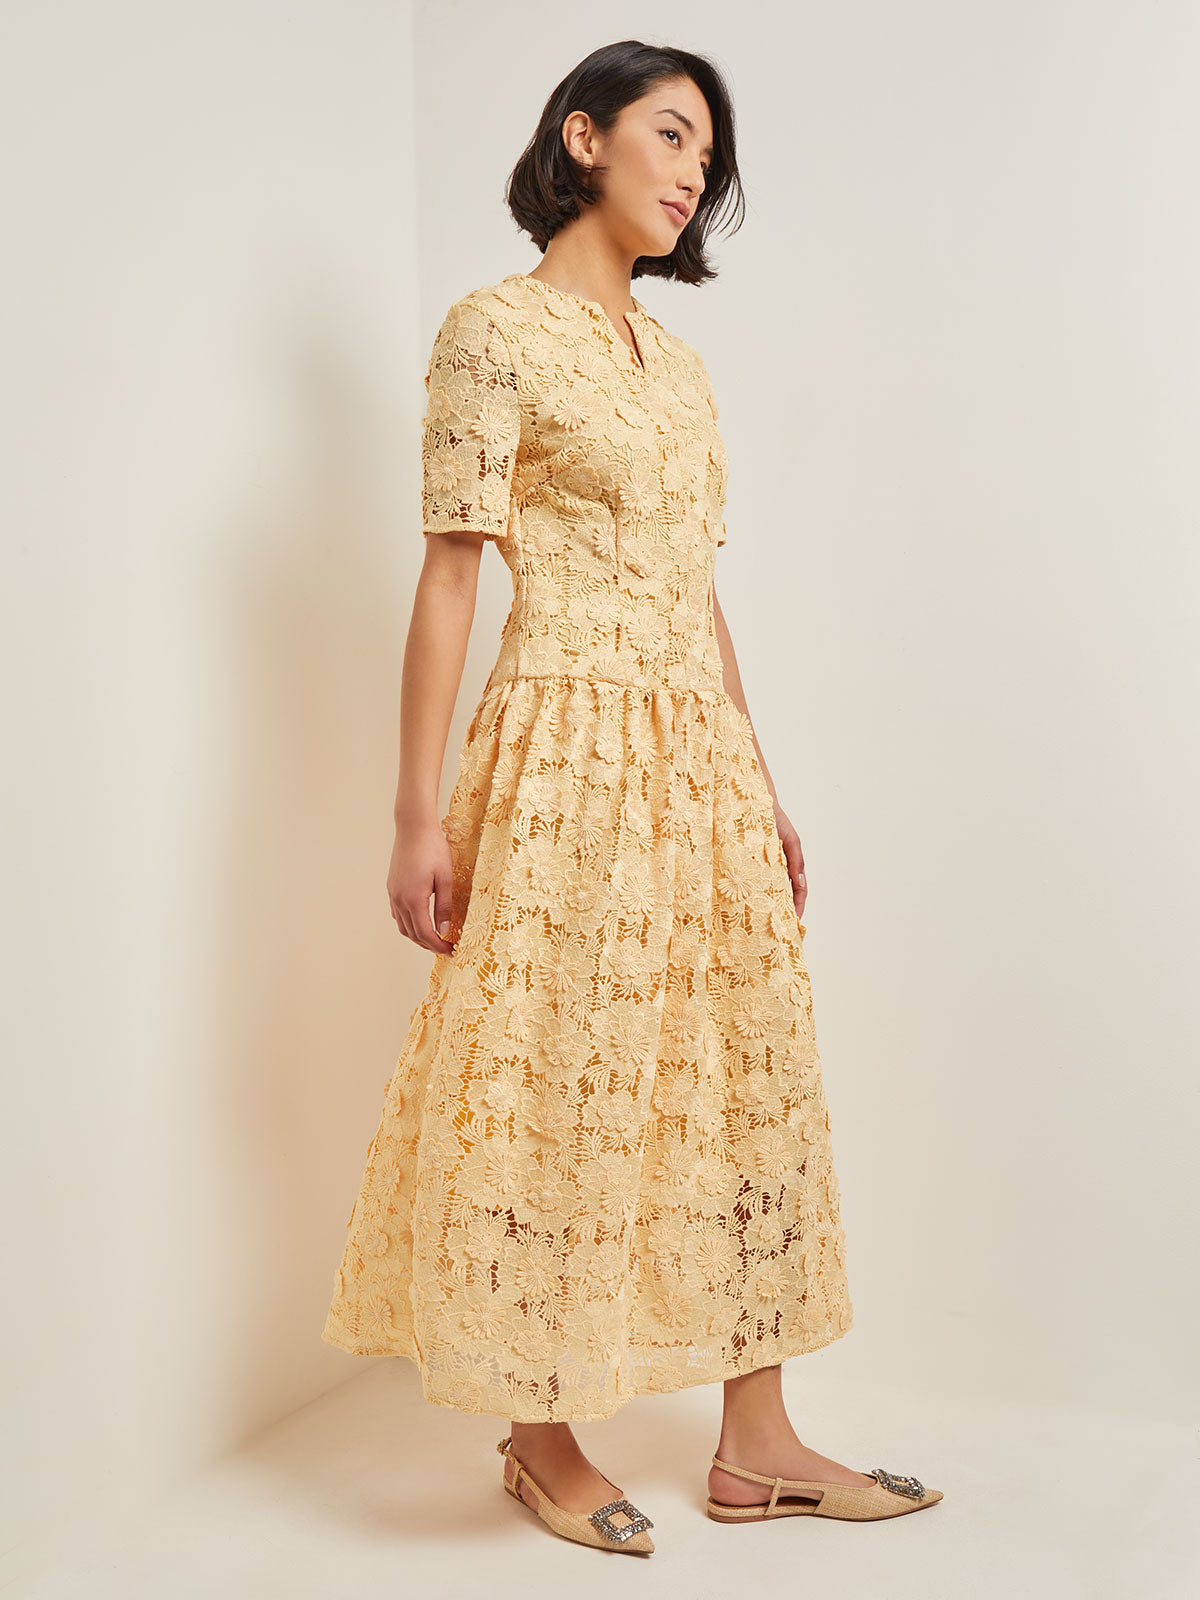 Petite Floral Applique On Lace Woven Midi Dress